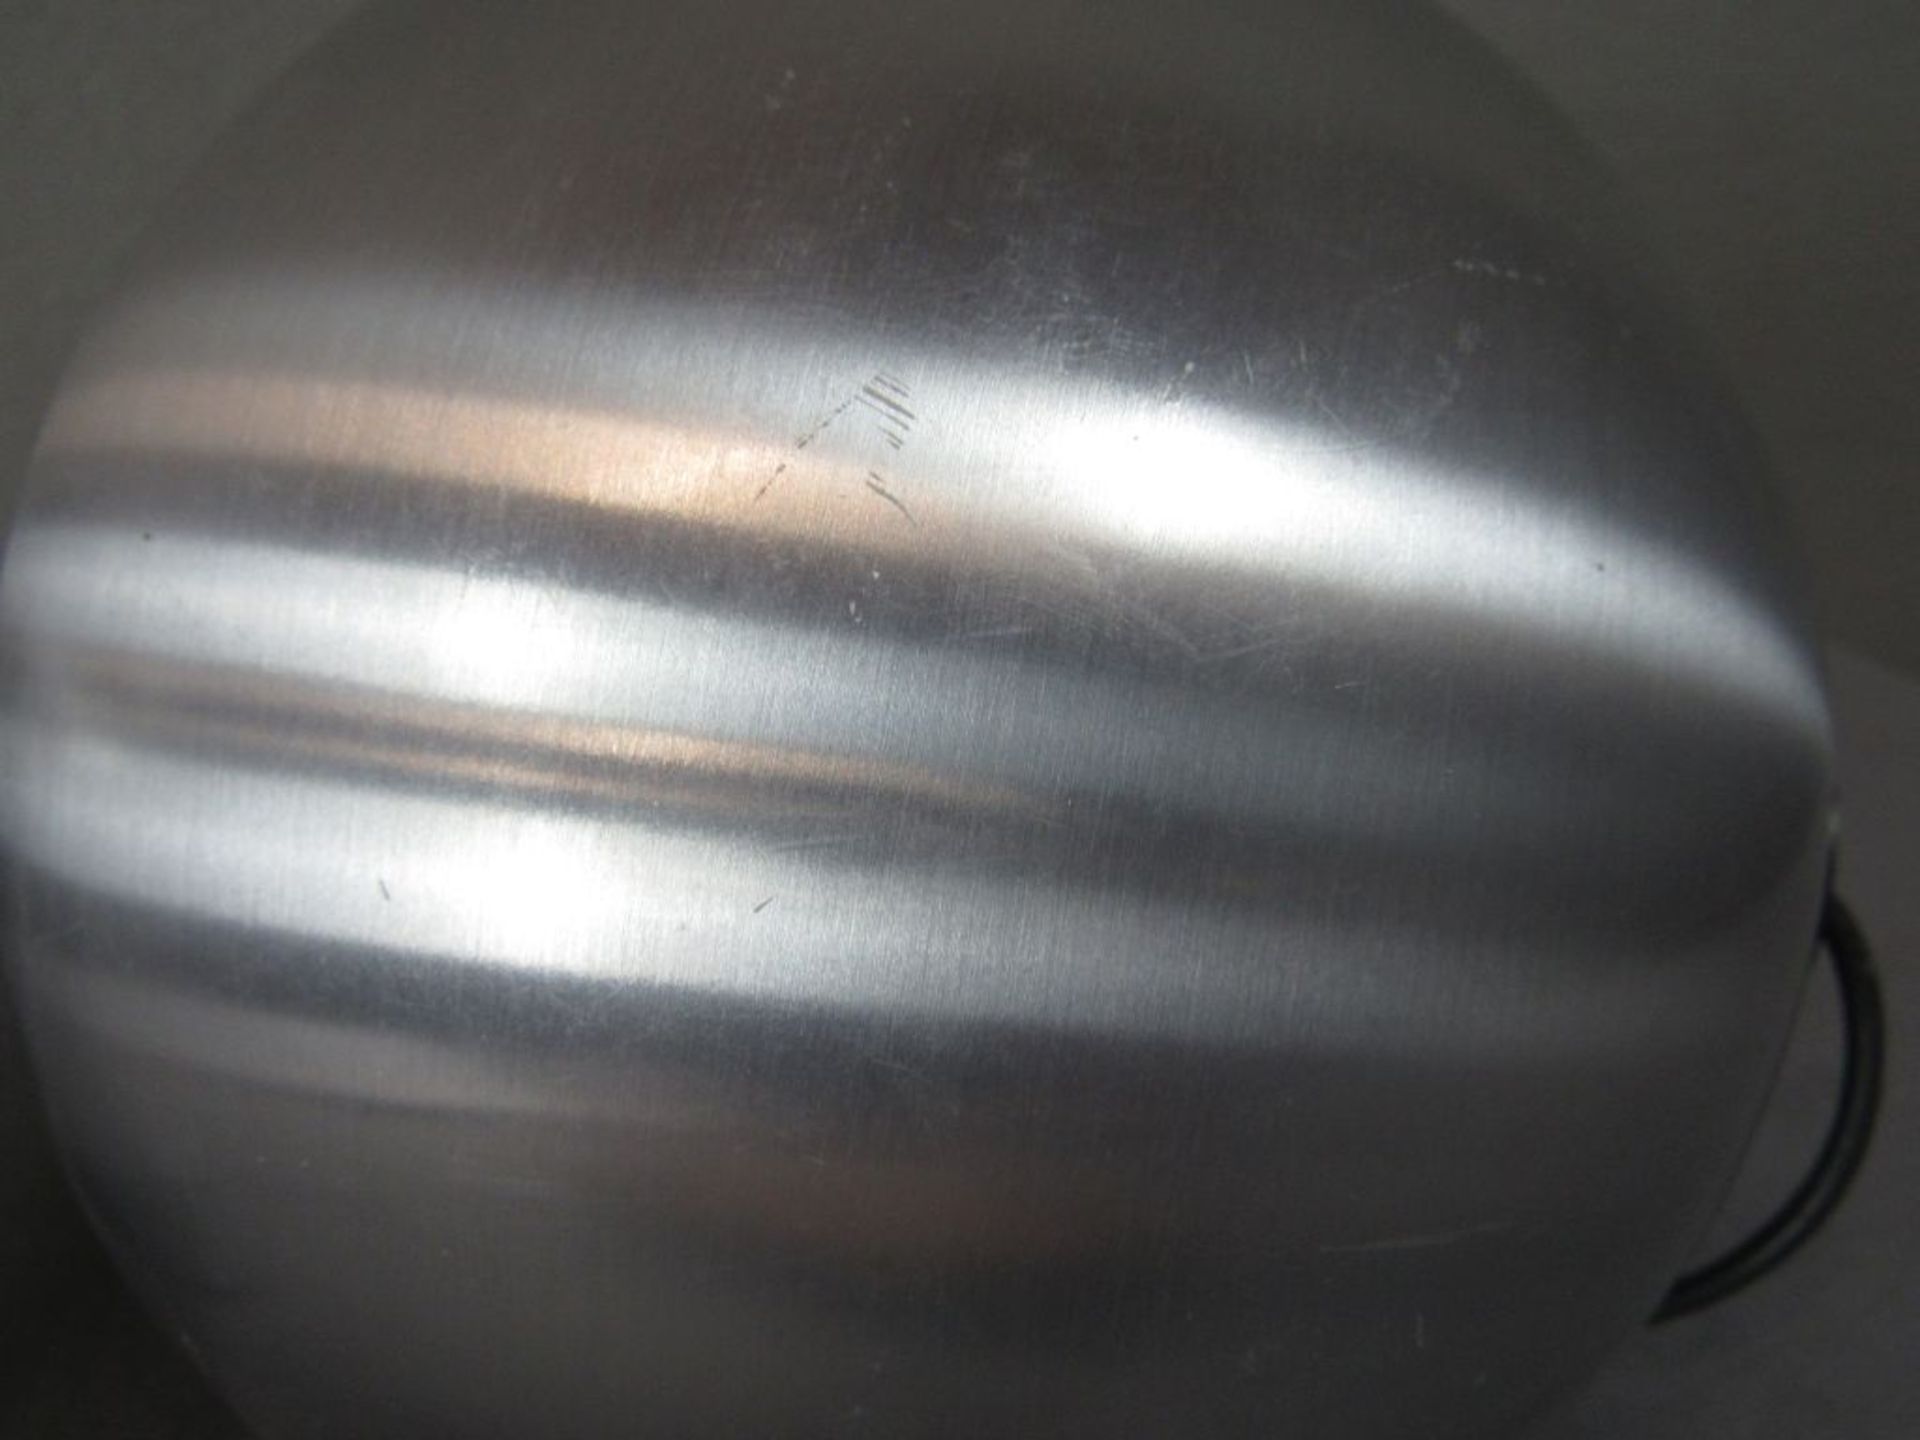 Kugellautsprecher 60er Jahre Telefunken gebürstetes Aluminium 19cm Durchmesser - Bild 7 aus 7